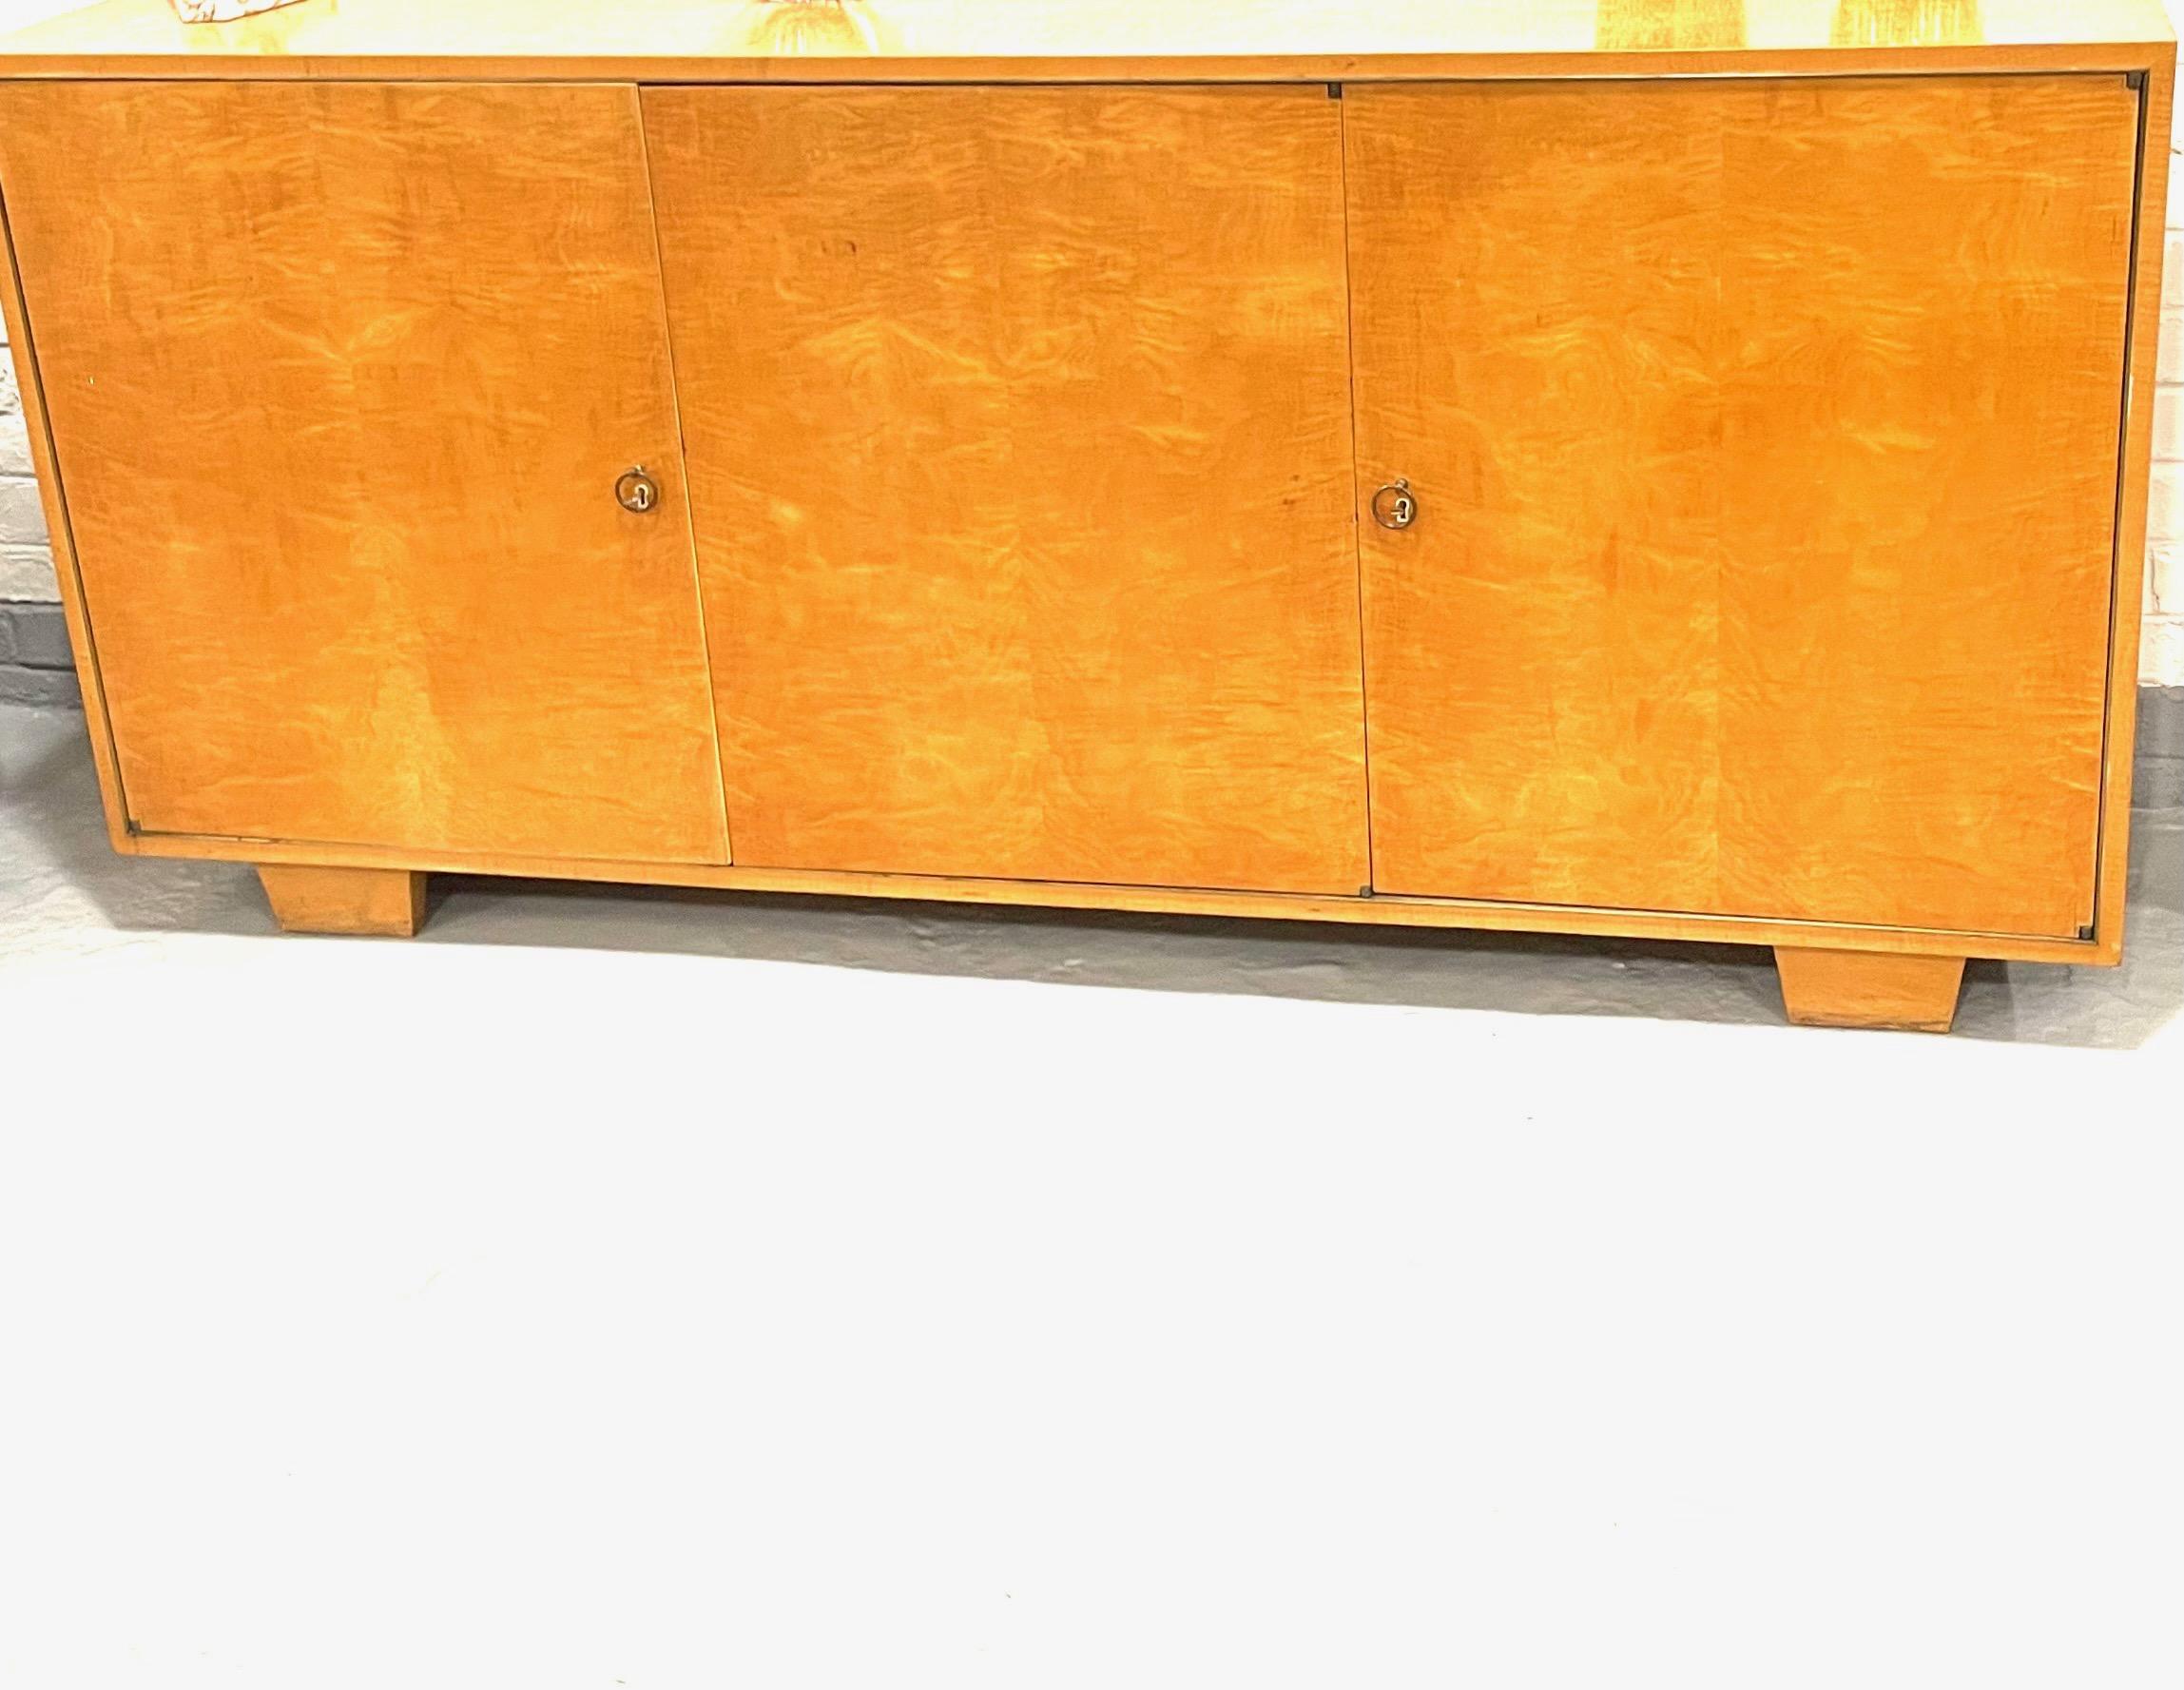 Elegantes dreitüriges Sideboard im Art-Deco-Stil mit mehreren unterschiedlich großen Schubladen im Stil von Jean-Michel Frank.
Monolitische Form, Griffe aus Messingringen, Schlüssellöcher aus Knochen, zwei Schlüssel.
Zuschreibung an De  Coene-Frères